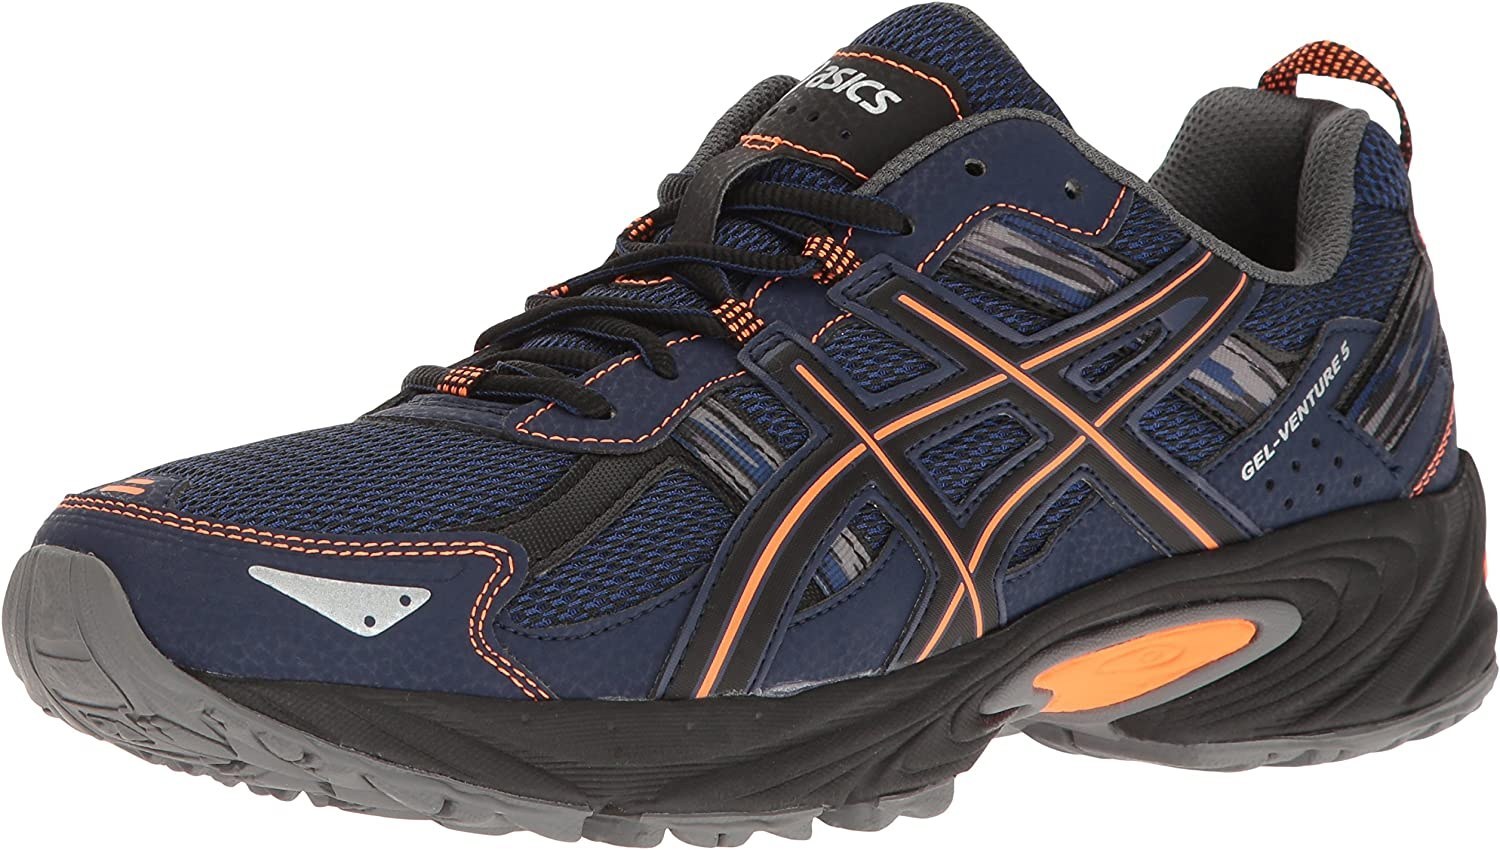 خرید و قیمت کفش مخصوص دویدن مردانه اسیکس مدل GEL Venture 5 ا ASICS Men's  GEL Venture 5 Running Shoe  Indigo Blue/Hot Orange/Black | ترب